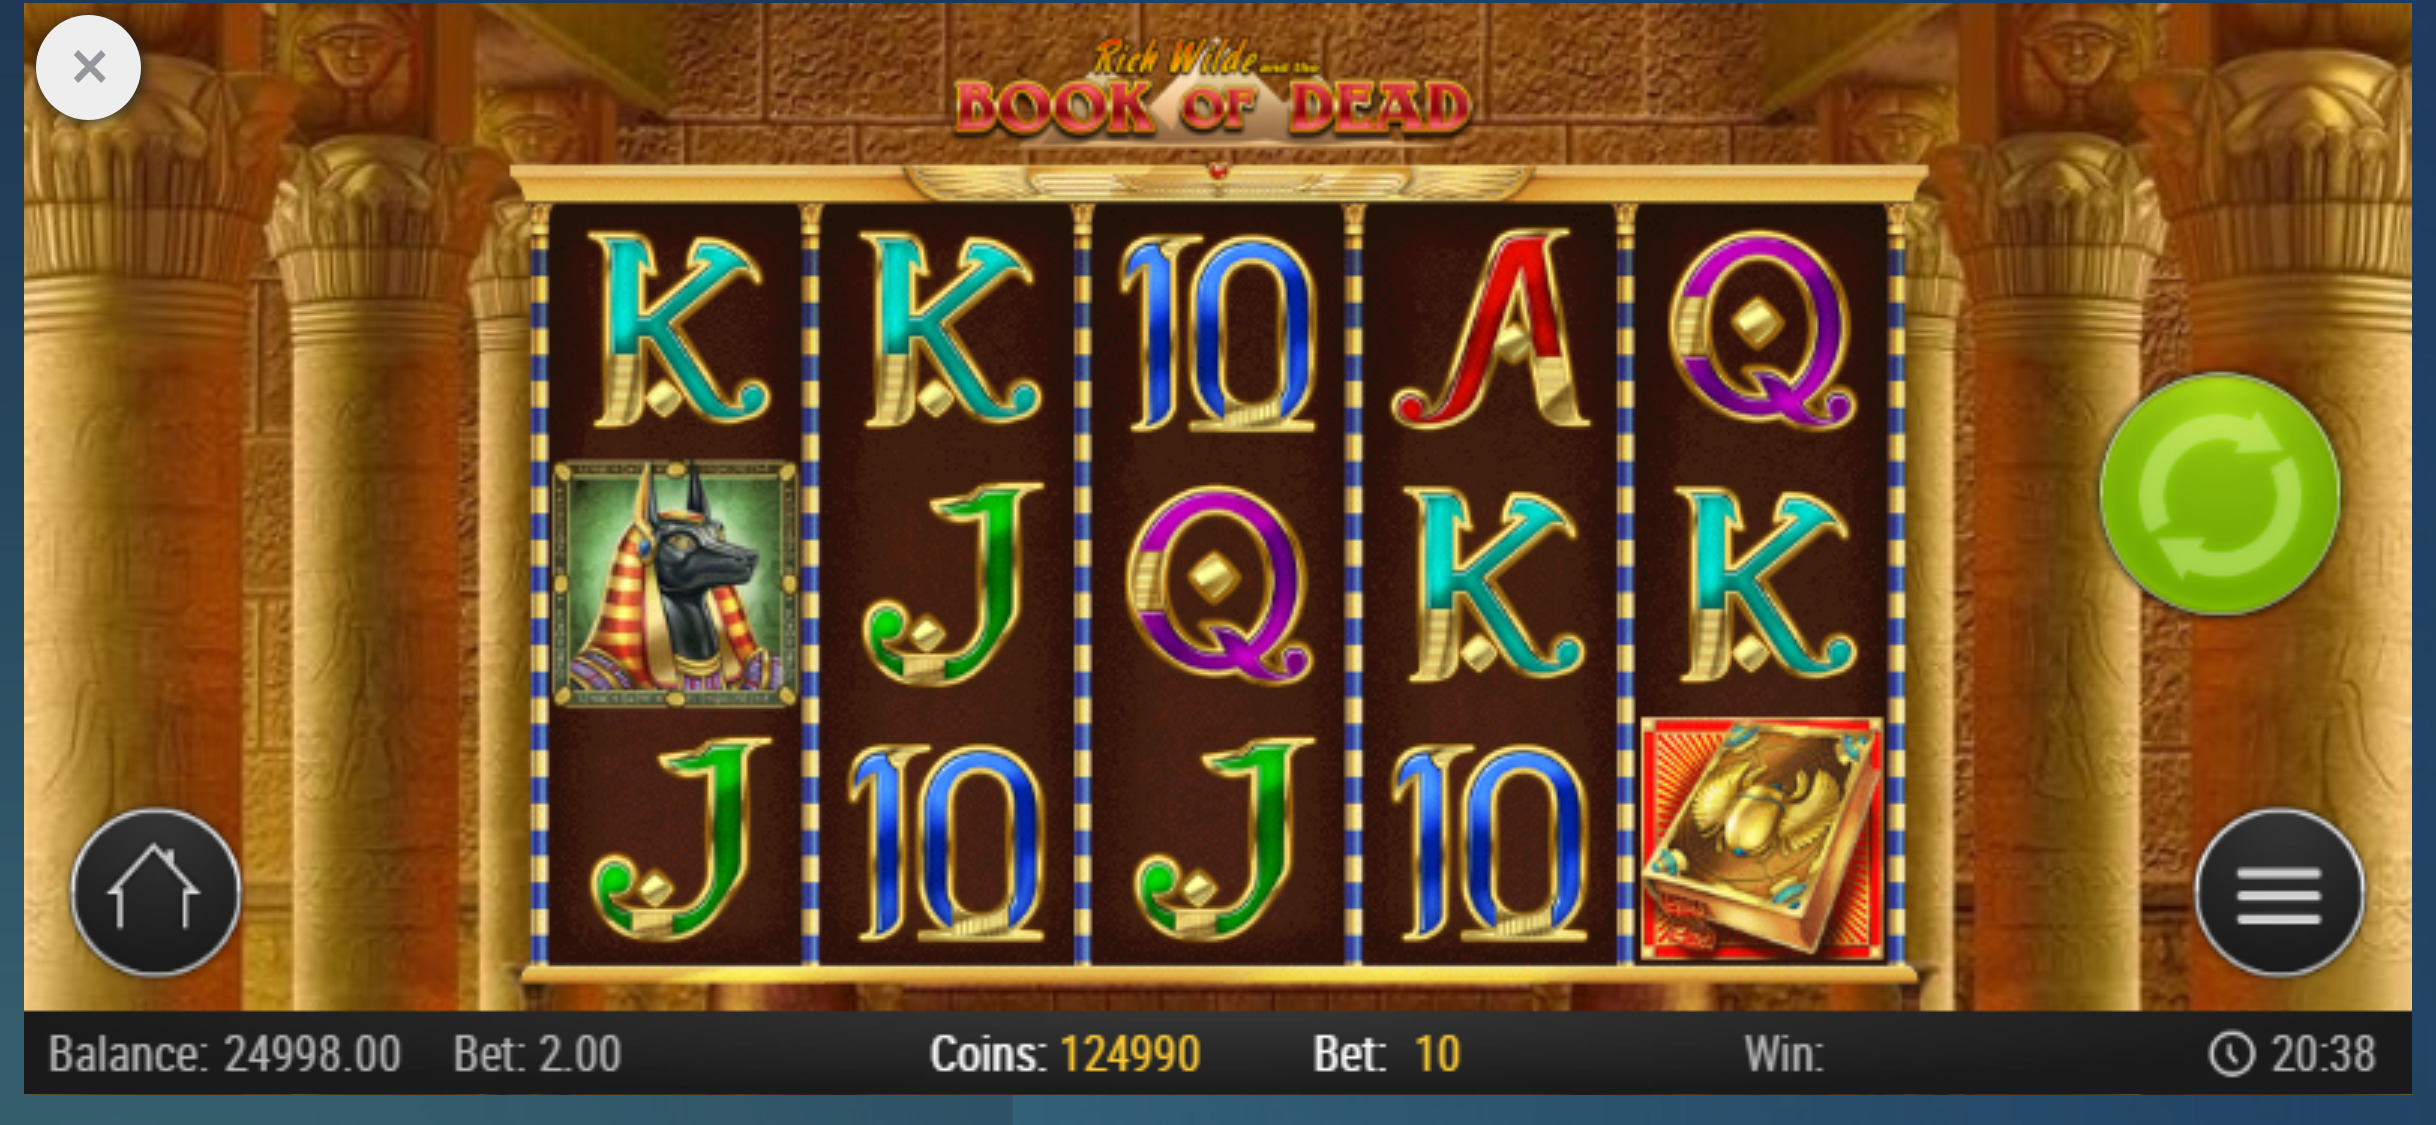 Drueck Glueck Casino Mobile Slot Games Review